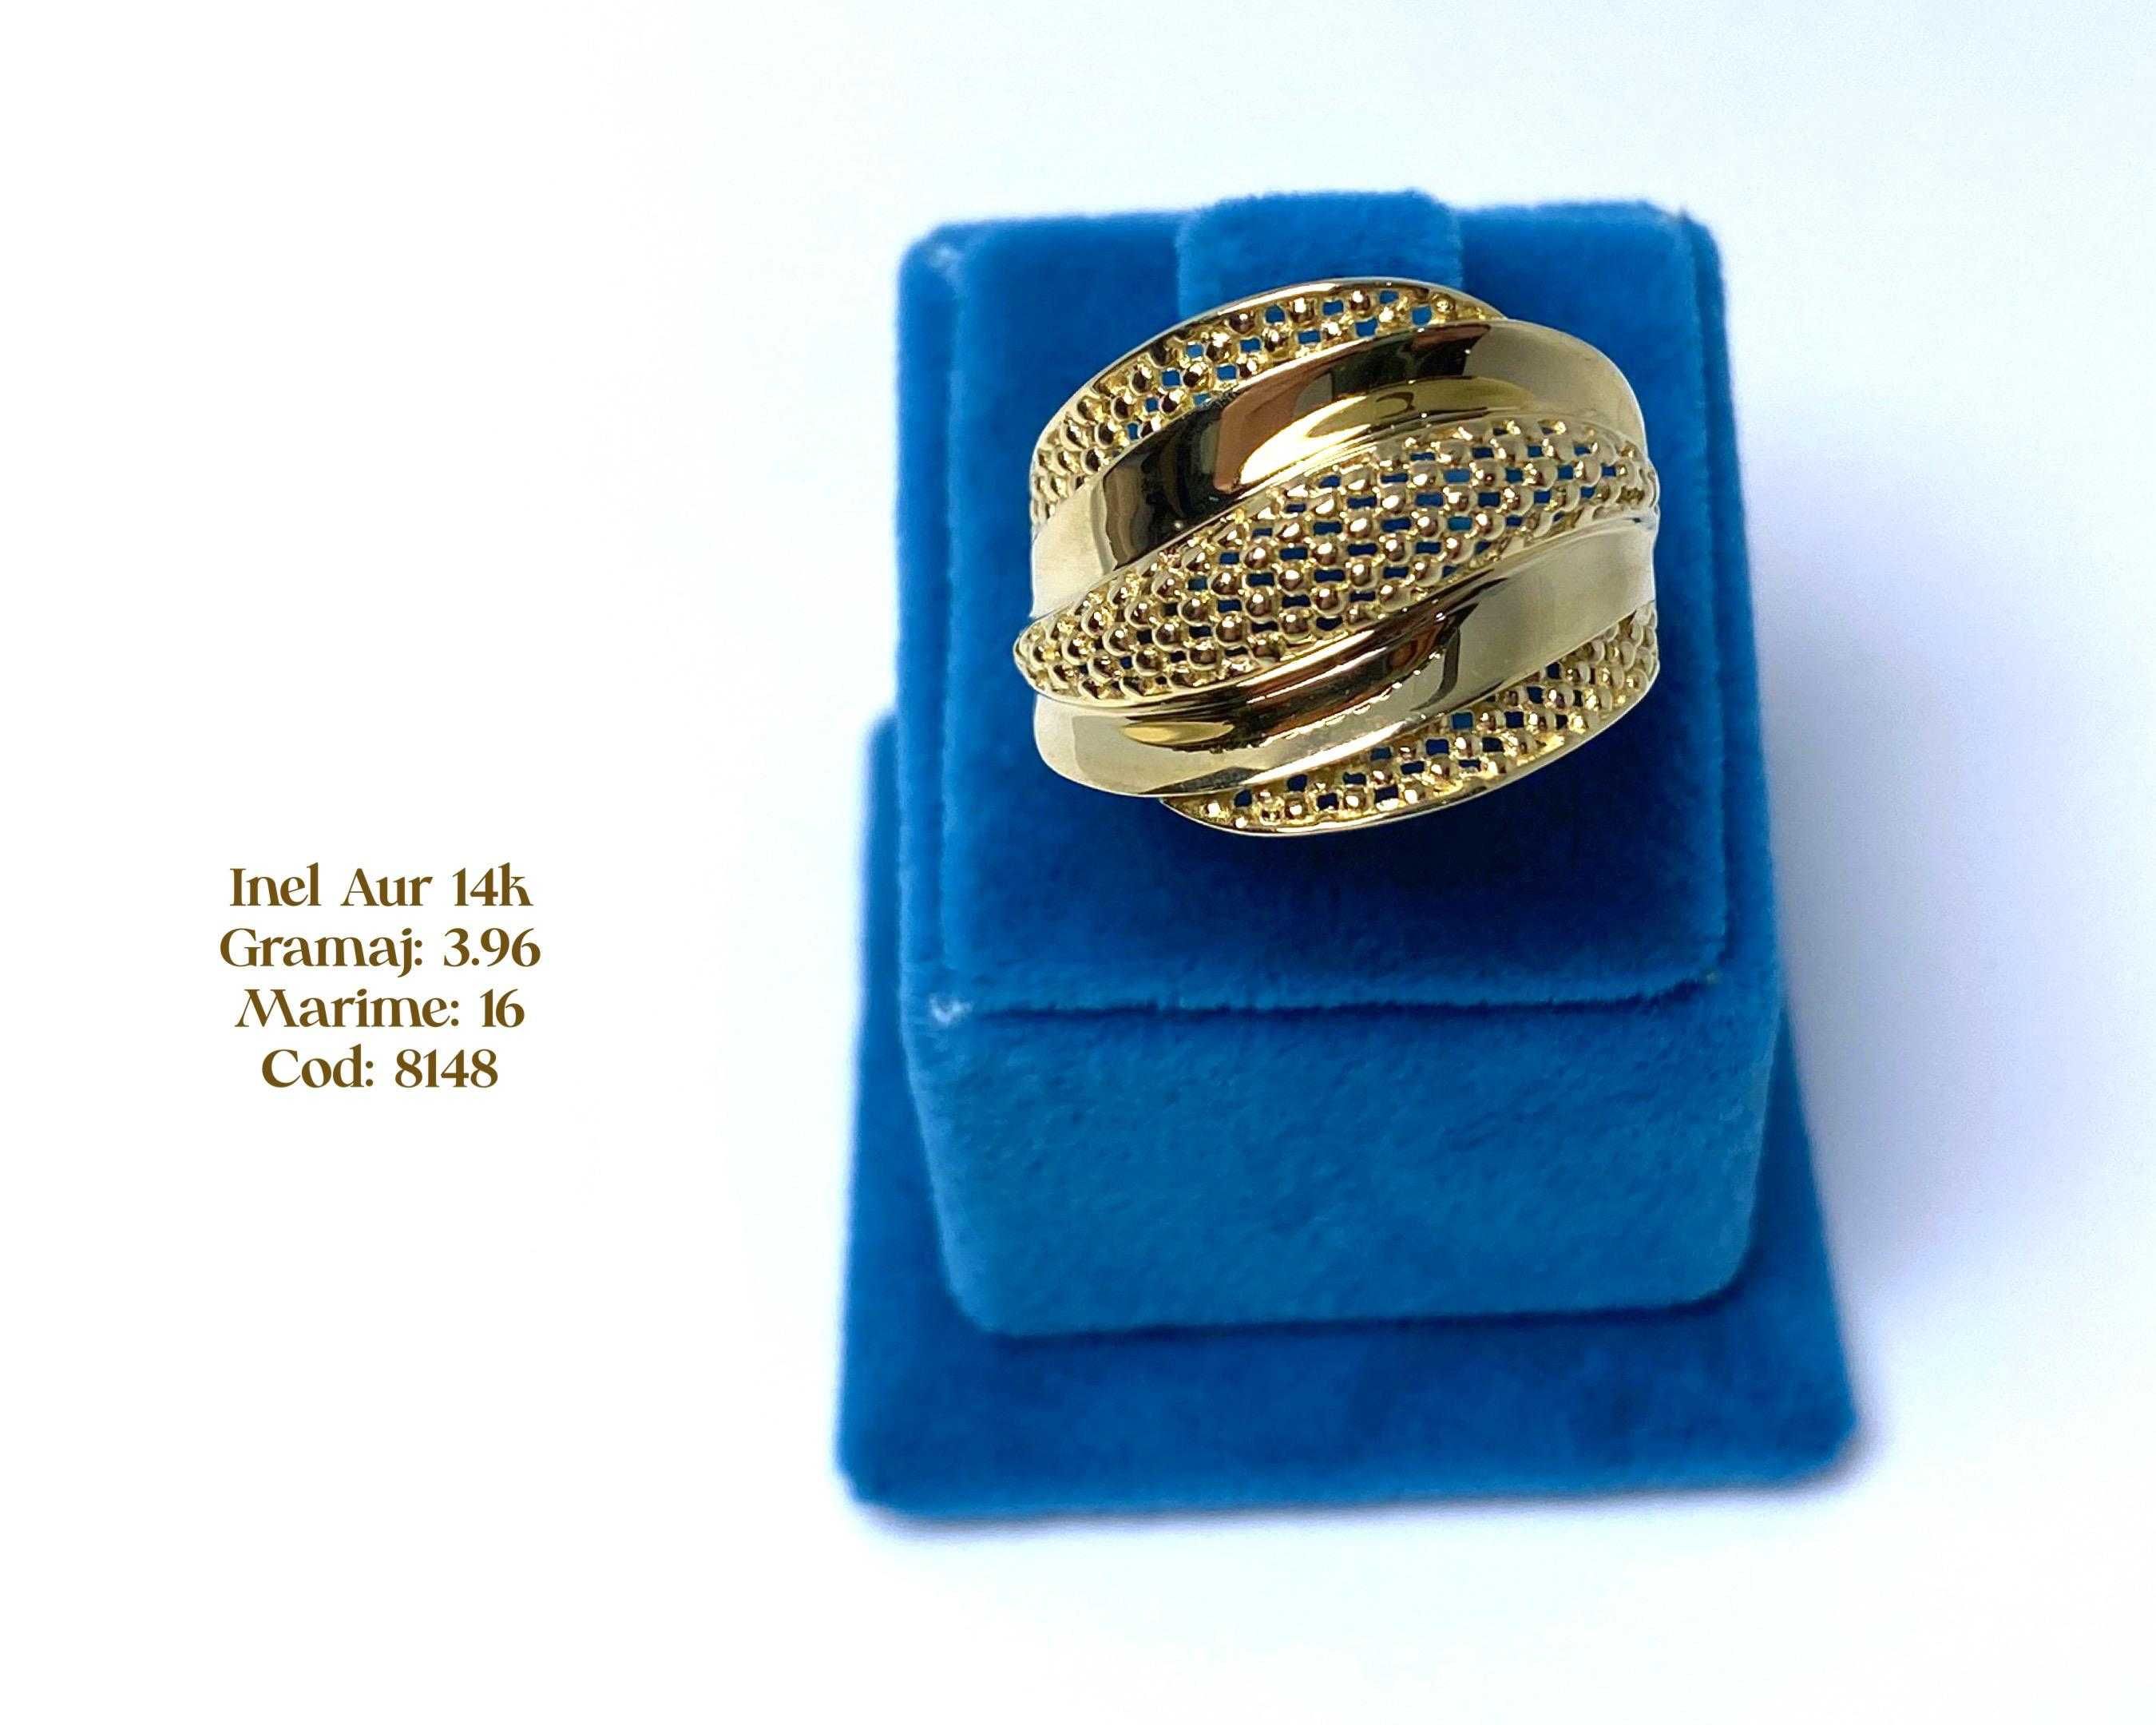 (8148) Inel Aur 14k, 3,96 grame FB Bijoux Euro Gold